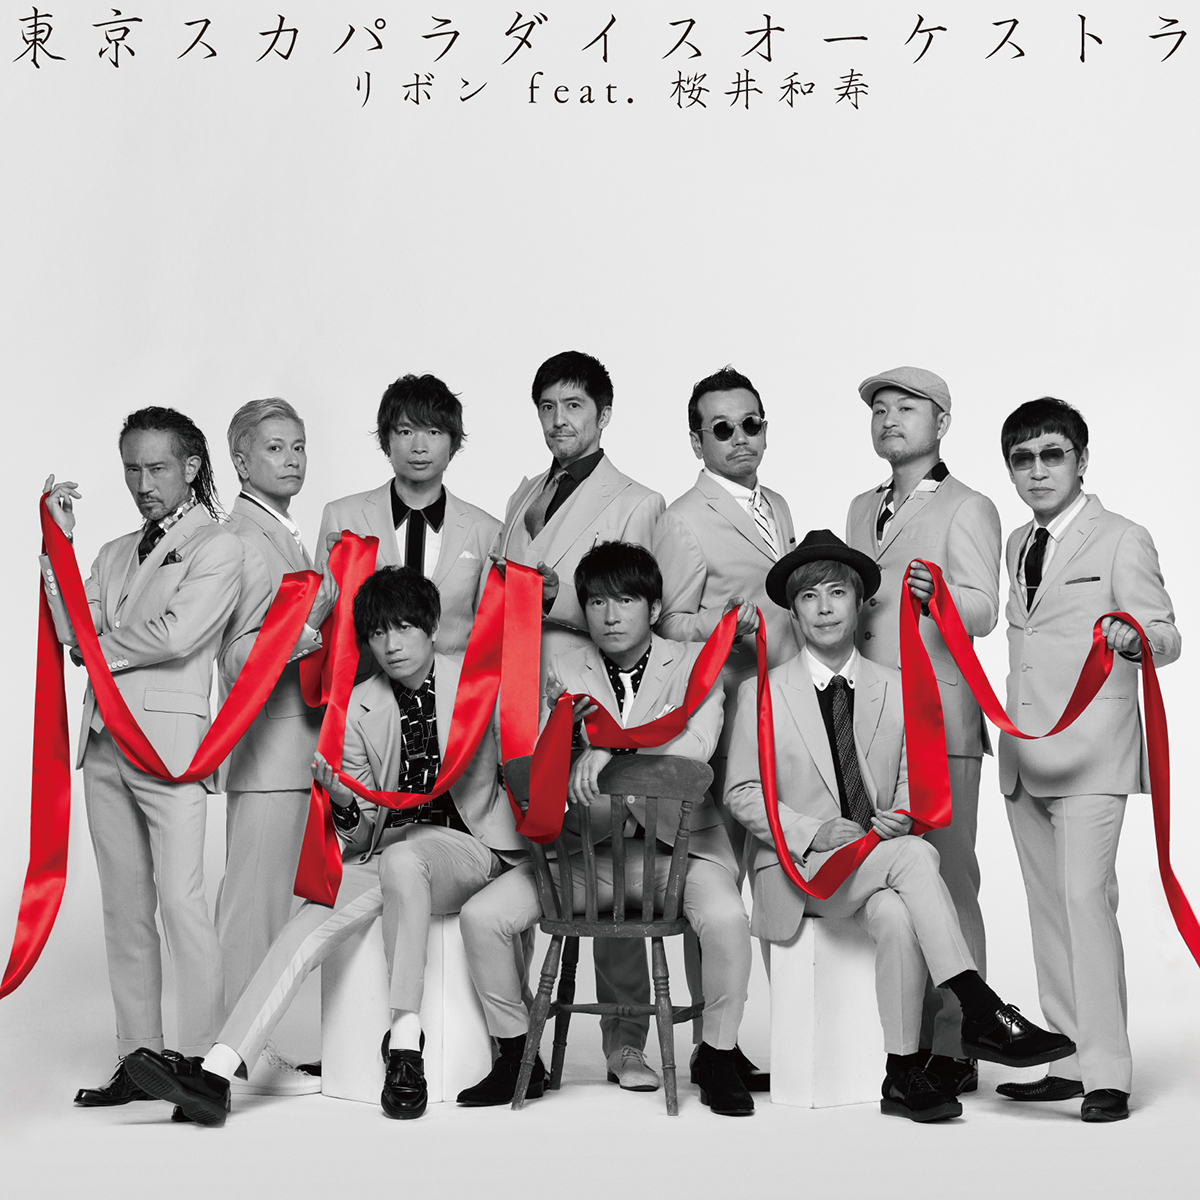 「リボン feat. 桜井和寿(Mr.Children)」CD only